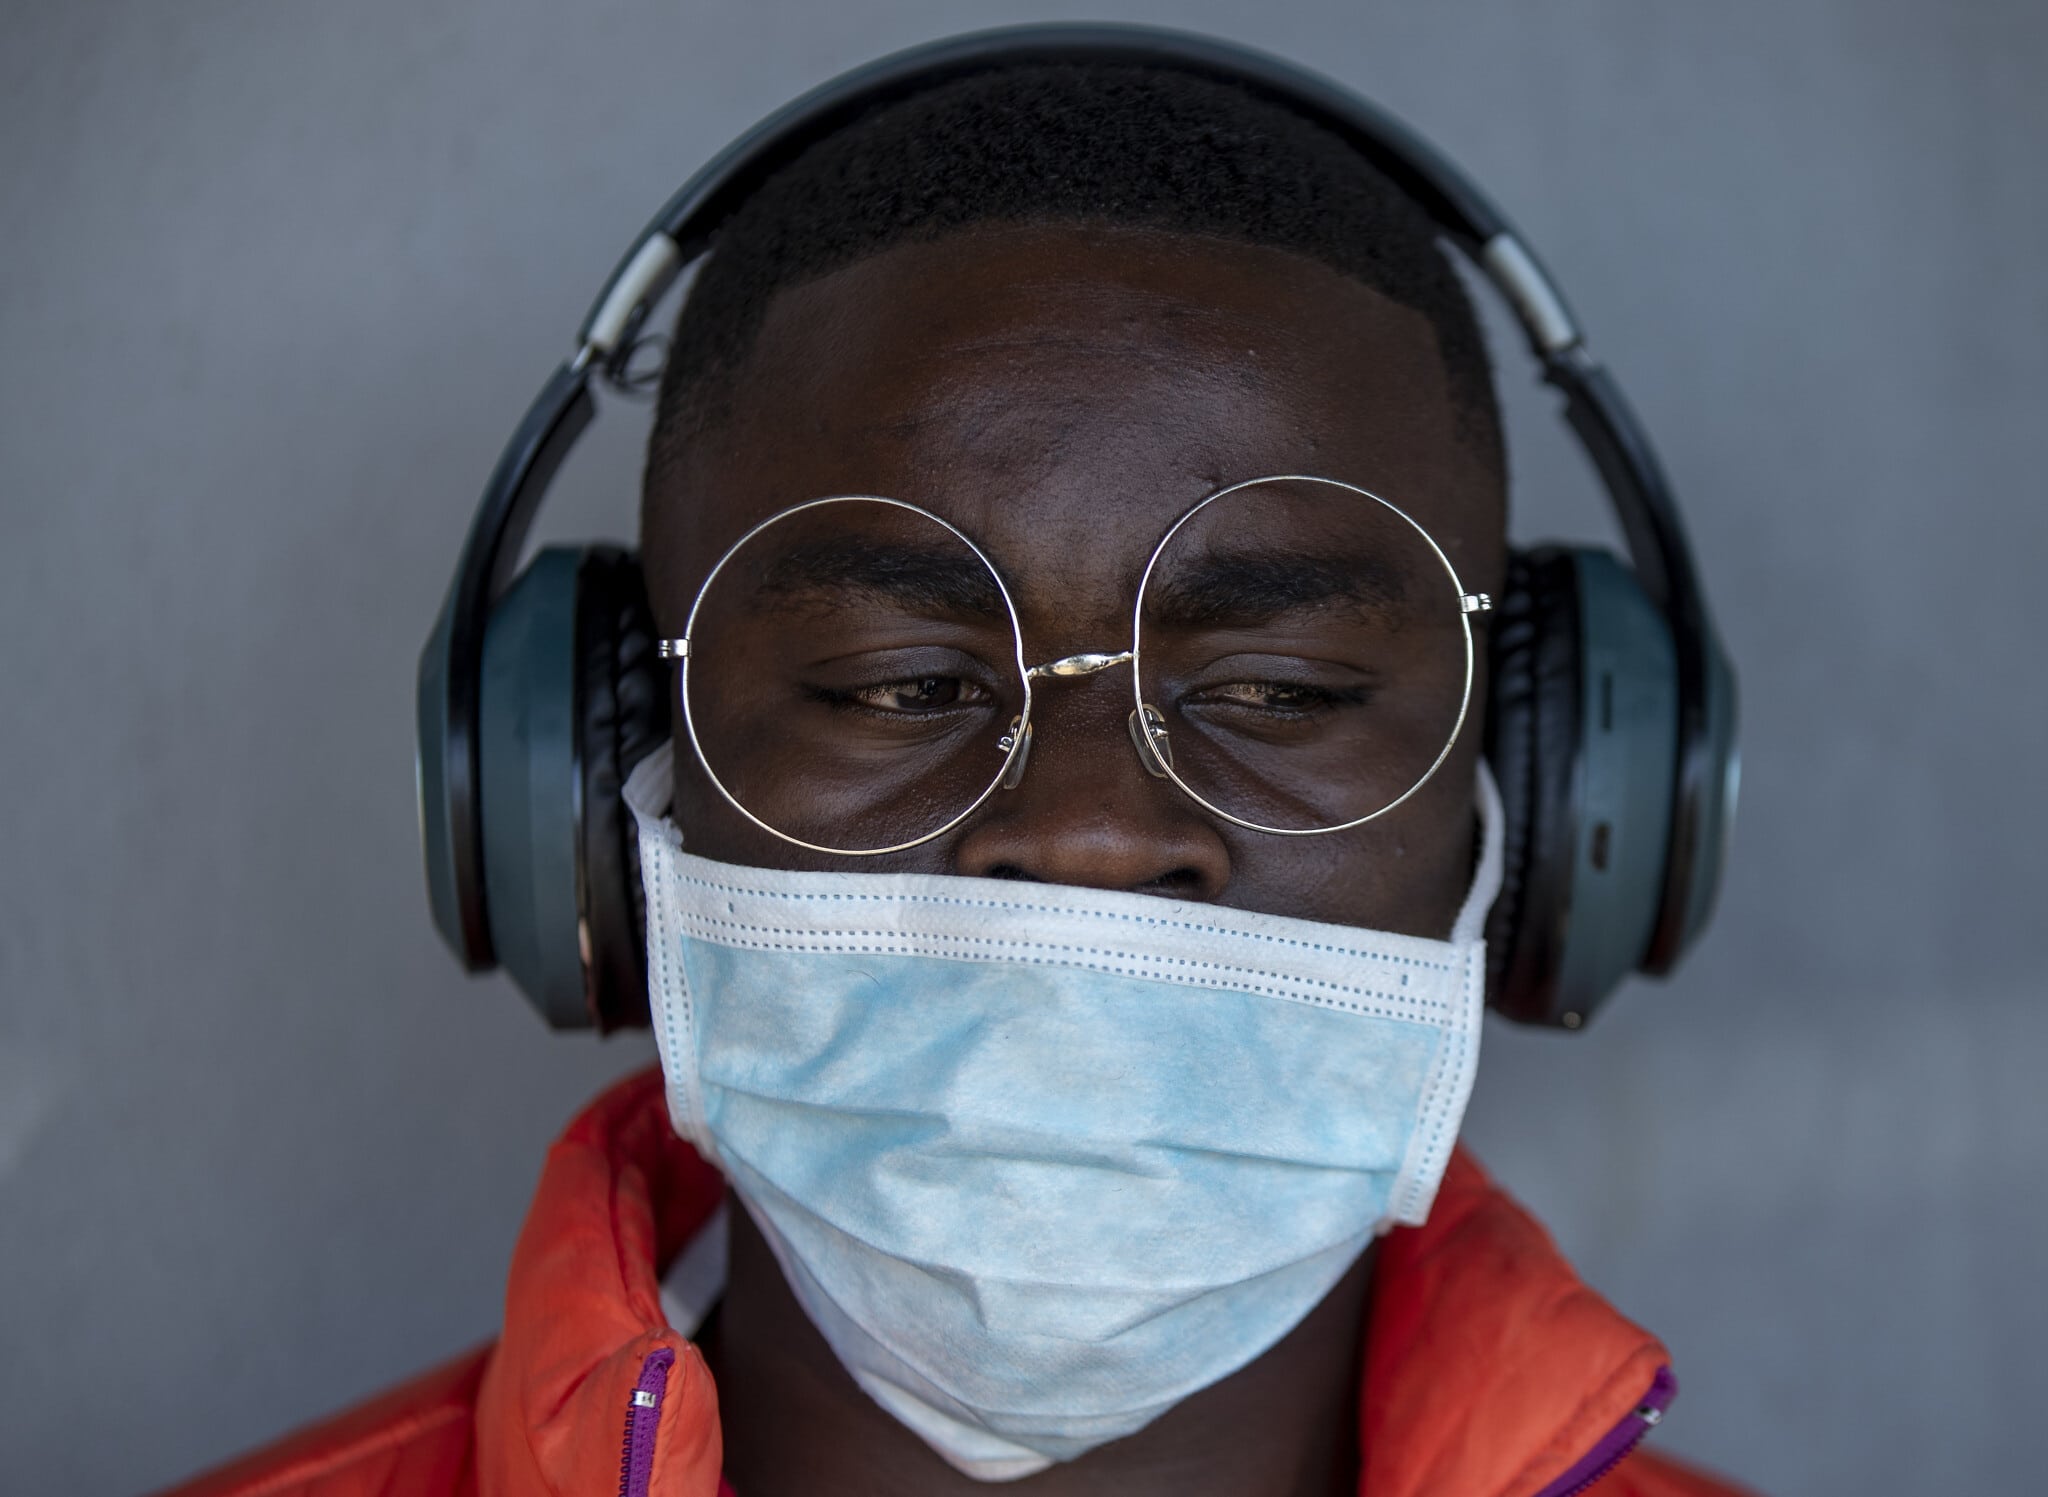 ספר לובש מסכה להגנה מפני וירוס הקורונה, דרום אפריקה, מרץ 2020 (צילום: AP Photo/Themba Hadebe)